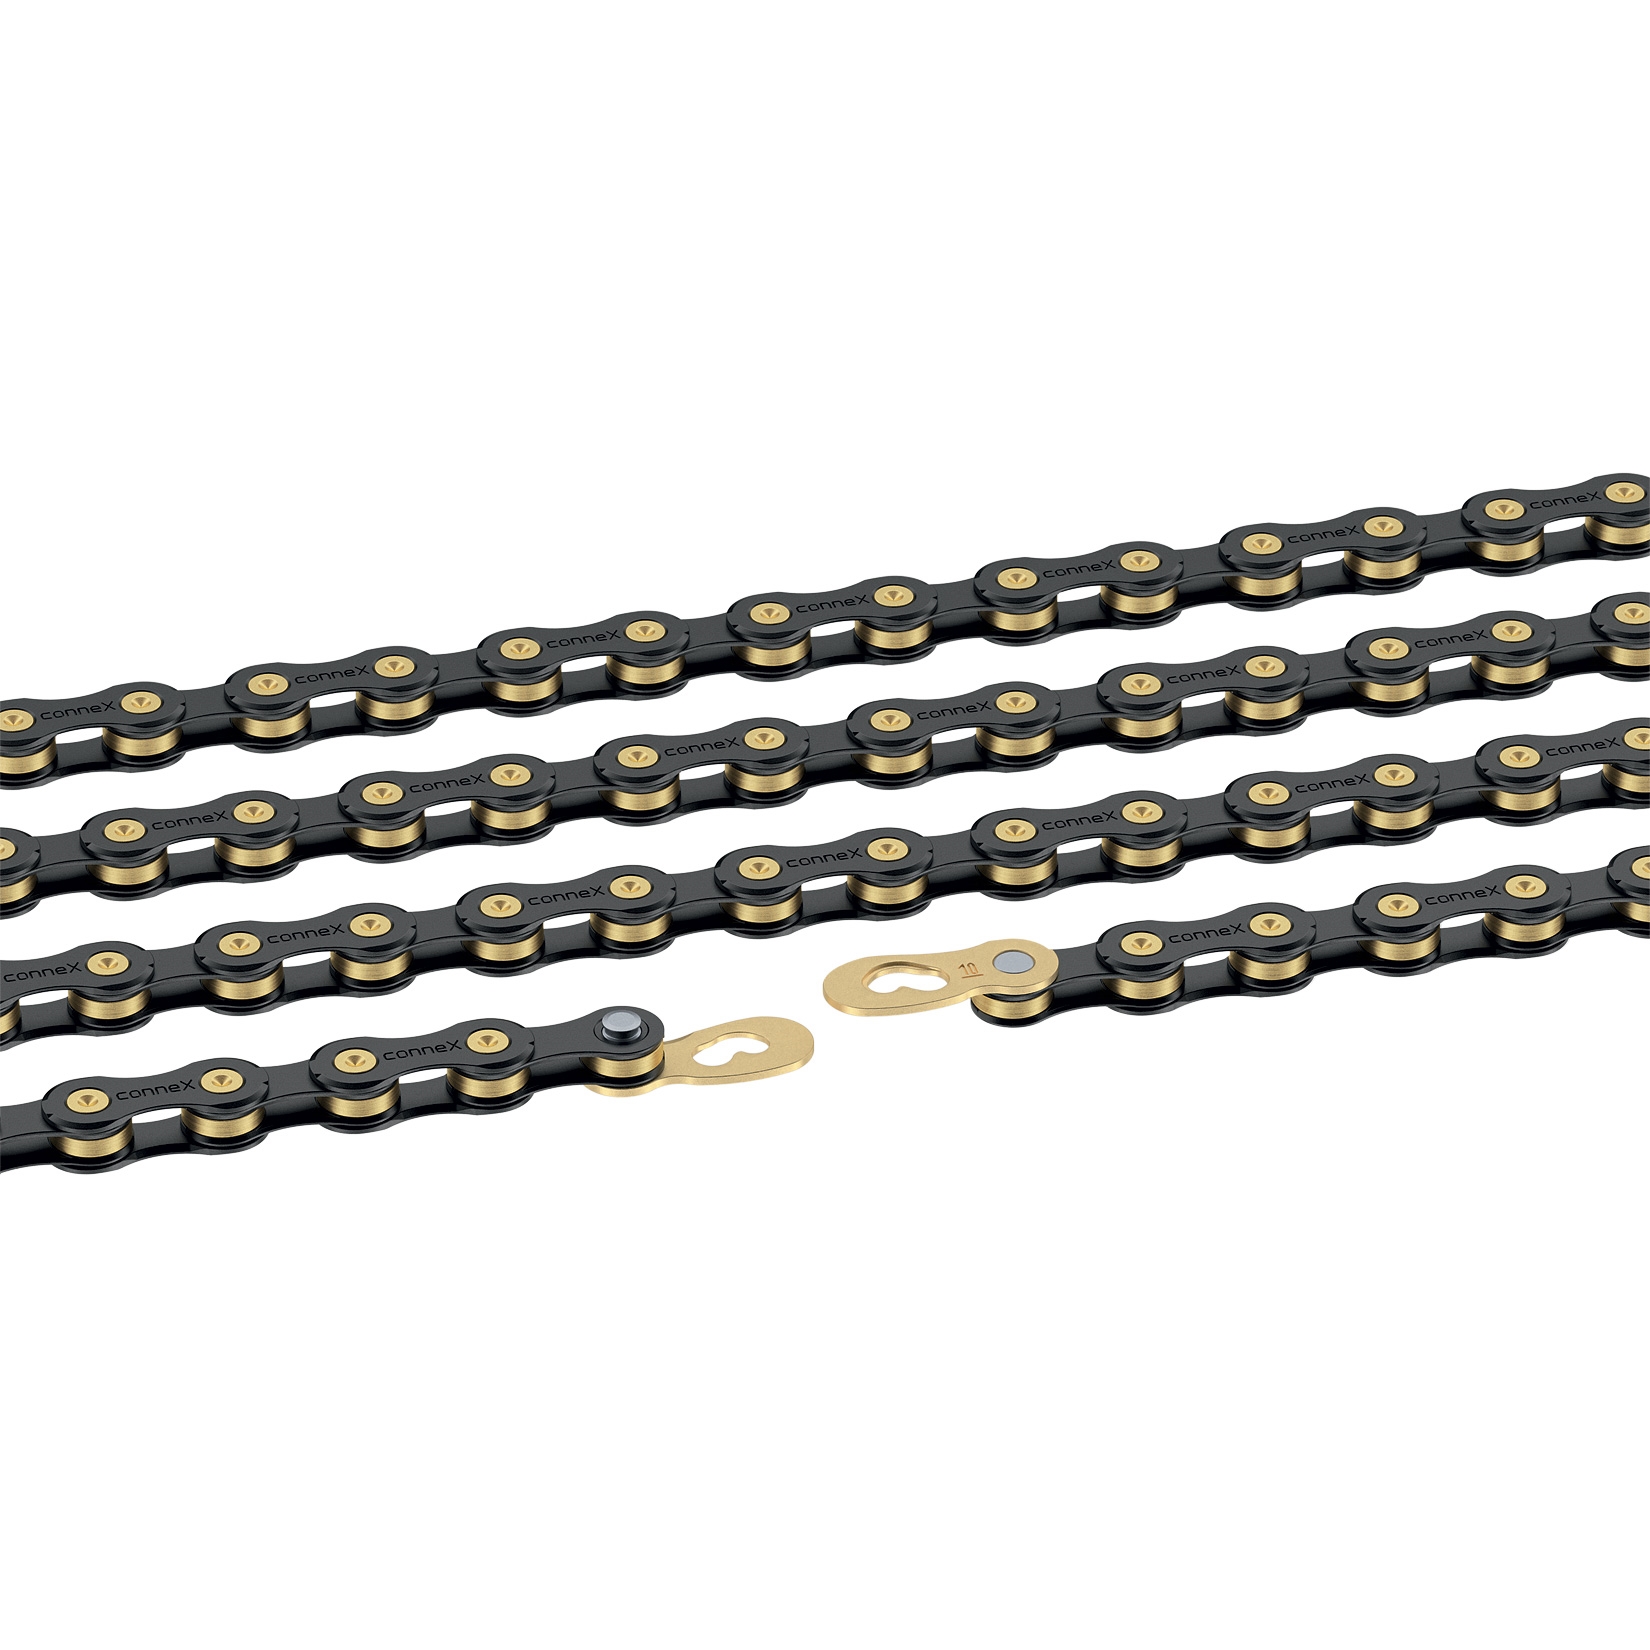 řetěz CONNEX 10sB pro 10-kolo, černo-zlatý